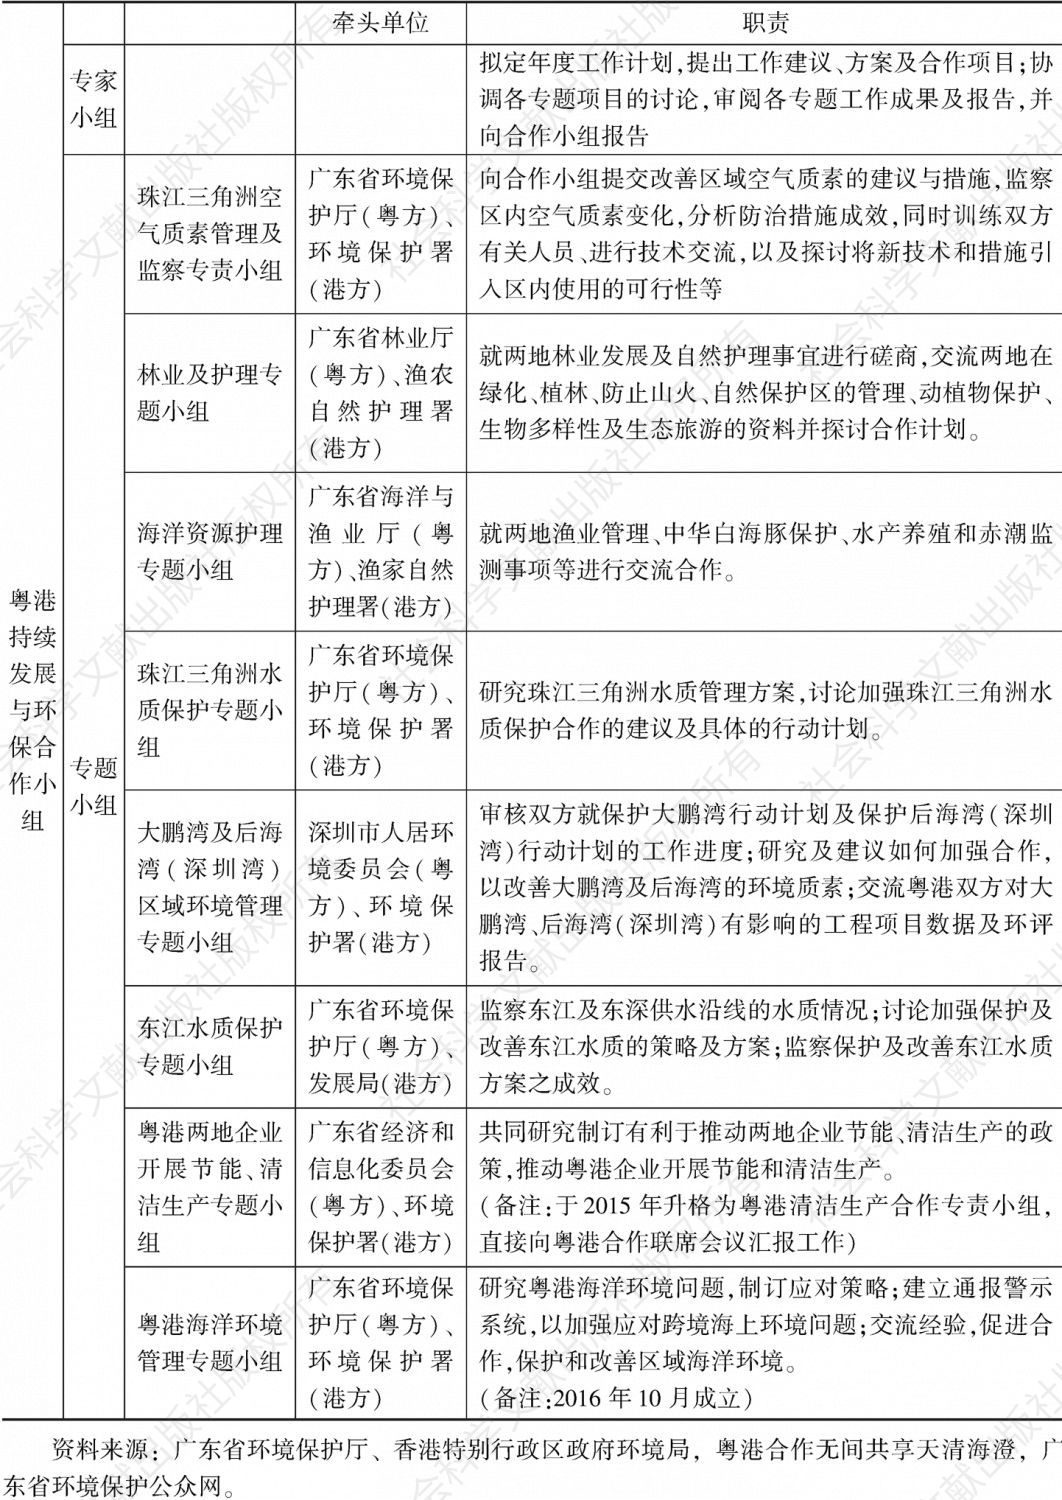 表2 粤港环境合作组织架构及职责分工